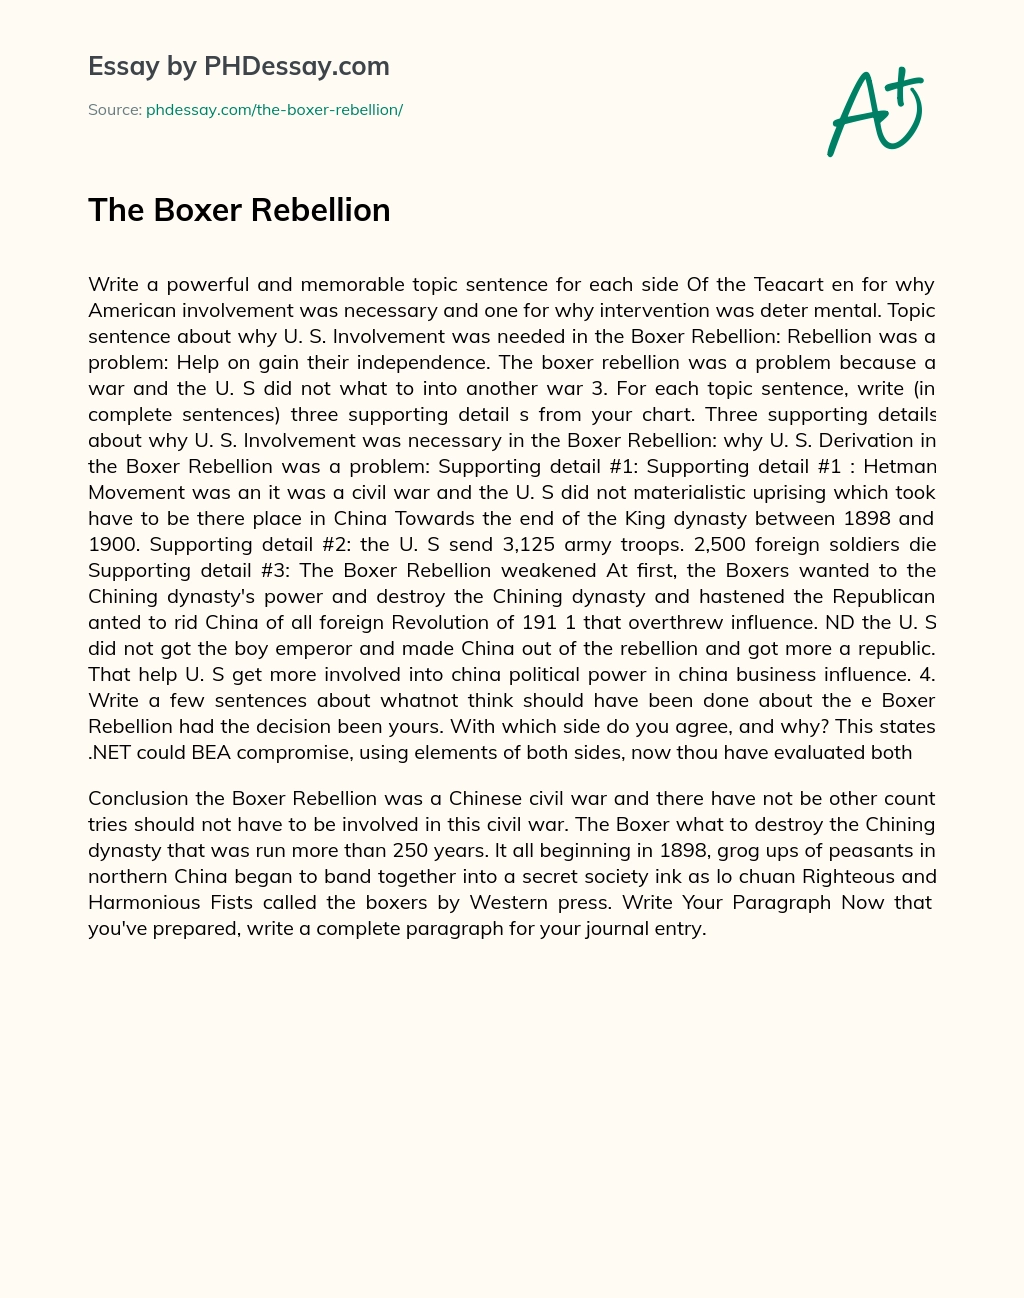 The Boxer Rebellion essay